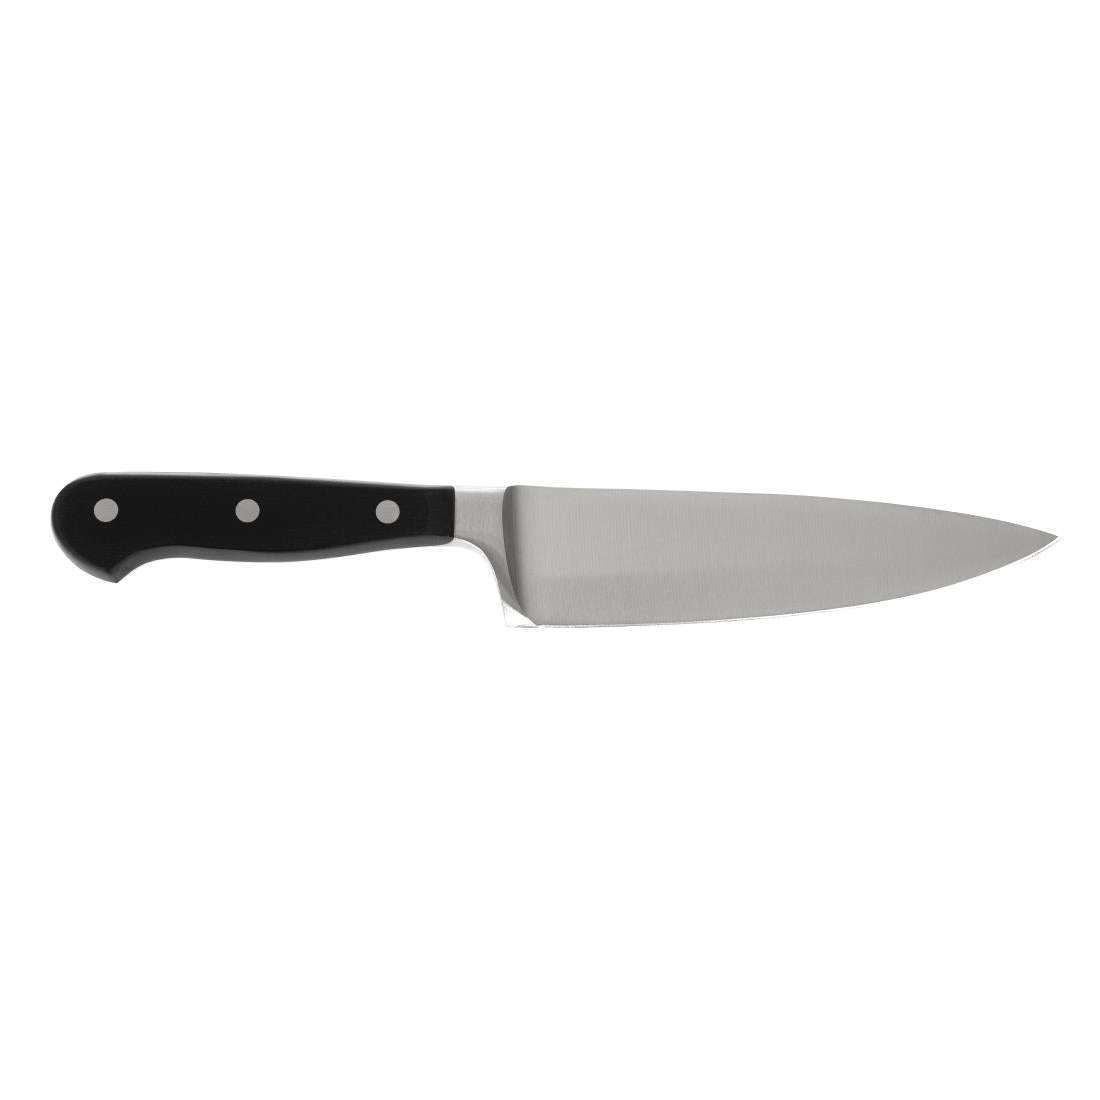 Wusthof Chefs Knife 15cm